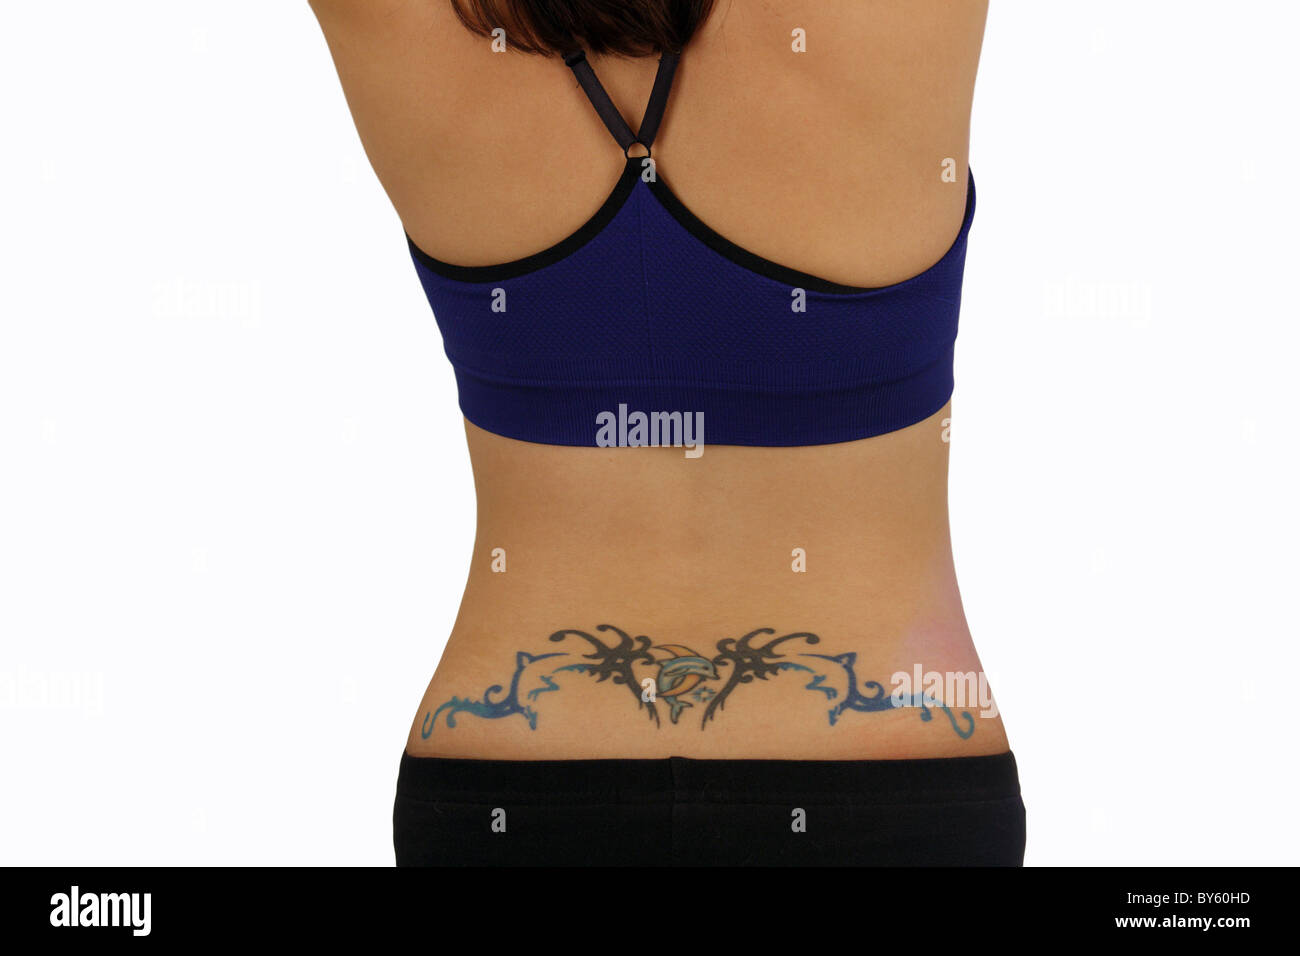 Femme avec un tatouage au bas du dos Photo Stock - Alamy